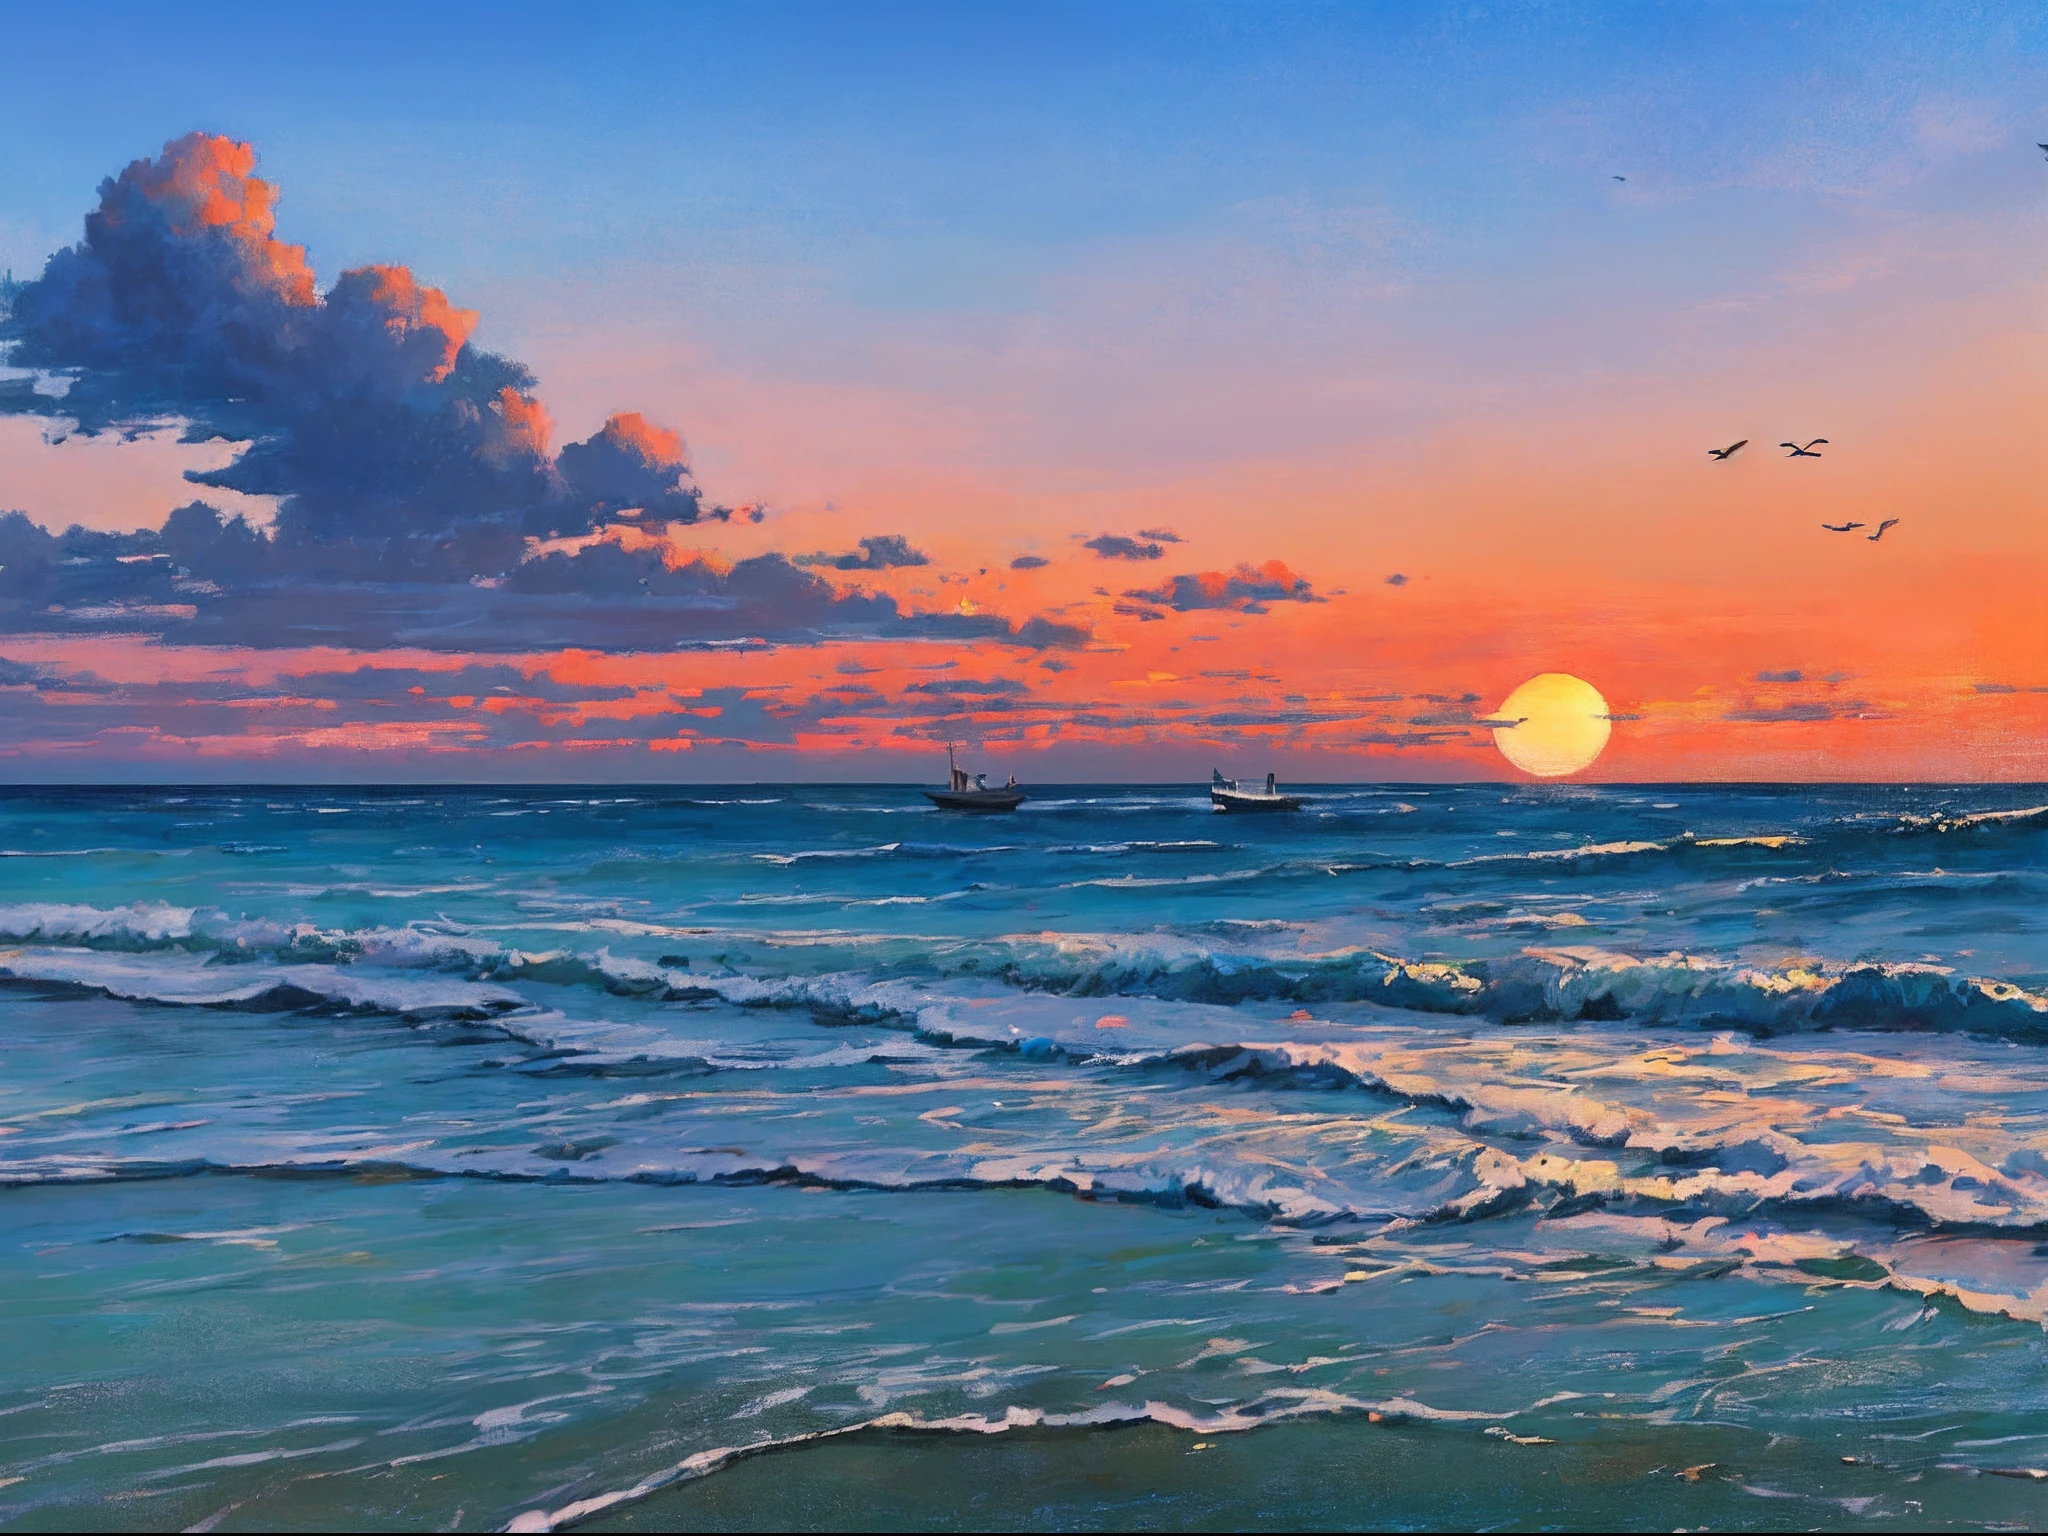 "Потрясающая картина маслом пляжного пейзажа со спокойным восходом солнца., нежные волны, далекая лодка, живописная смотровая башня, облака, и изящные силуэты парящих в небе птиц."